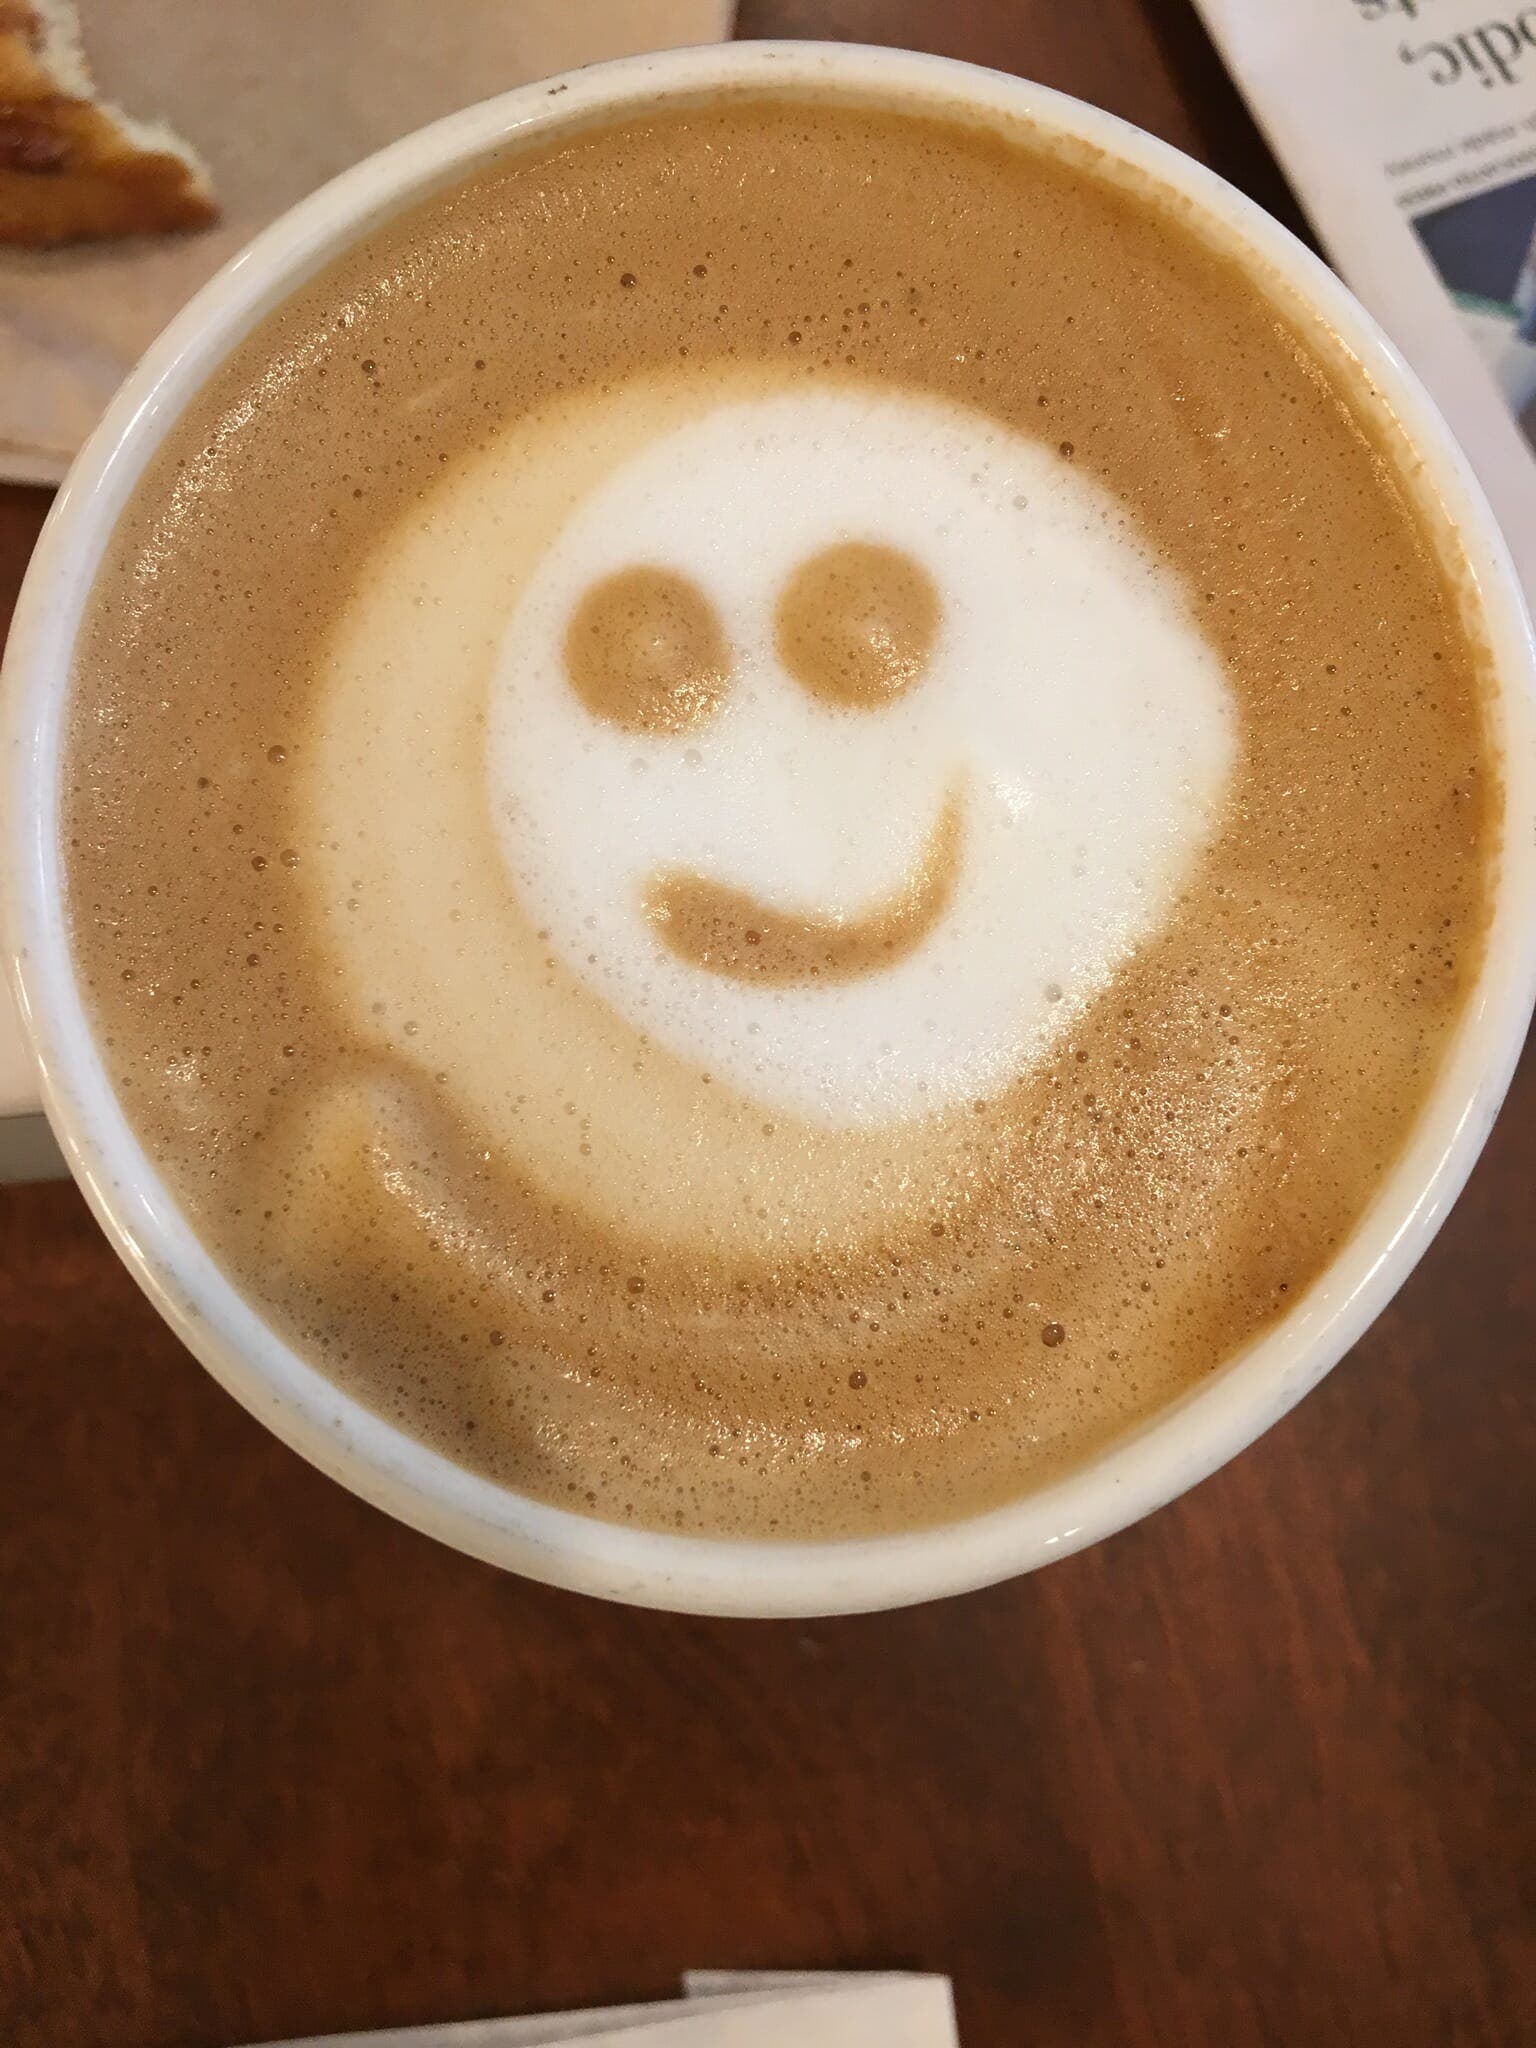 Le café est excellent pour la santé